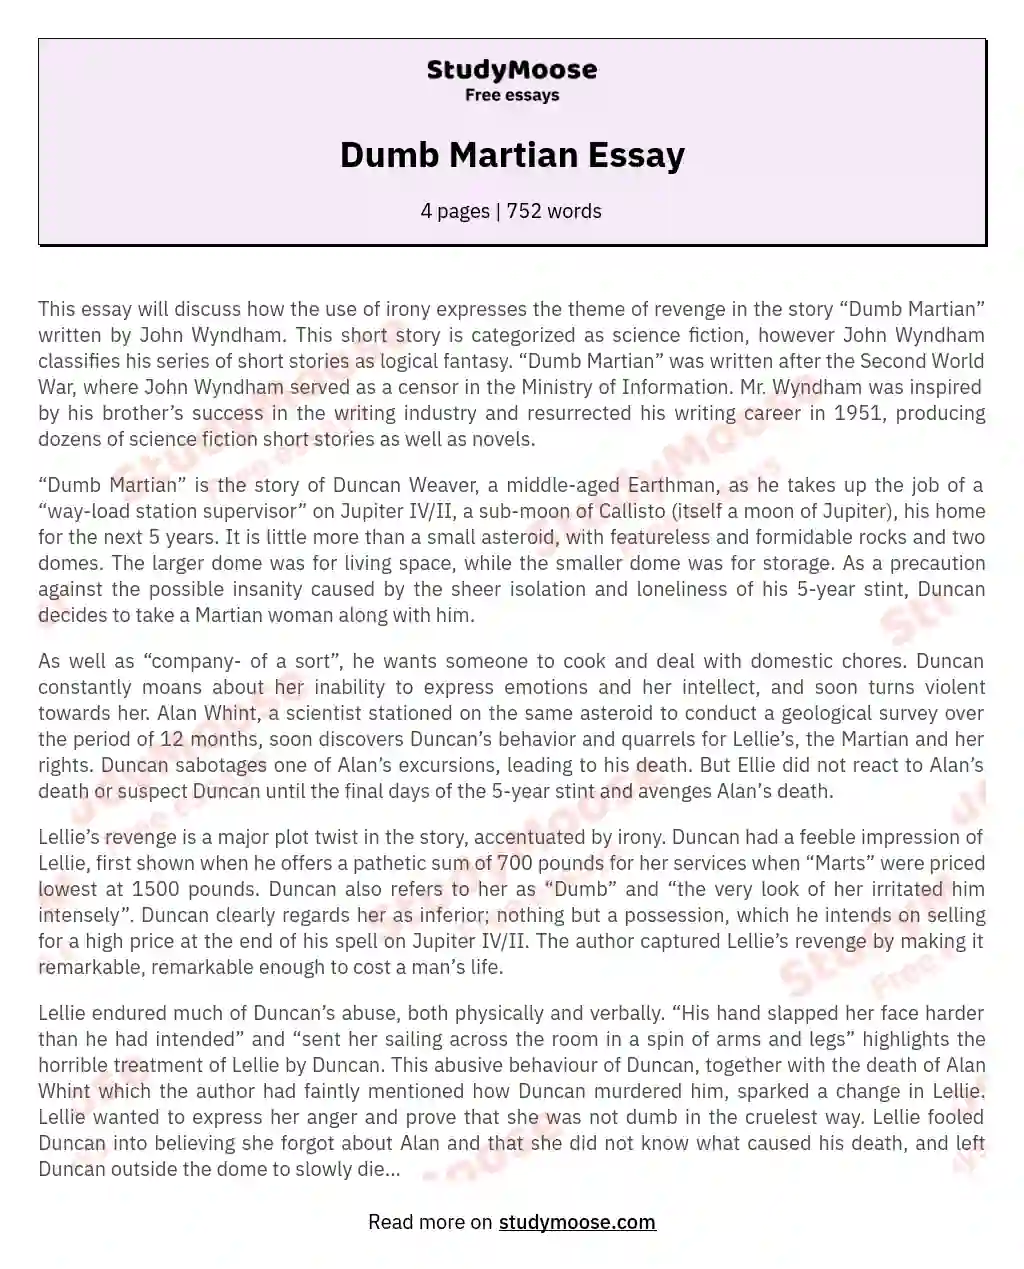 Dumb Martian Essay essay